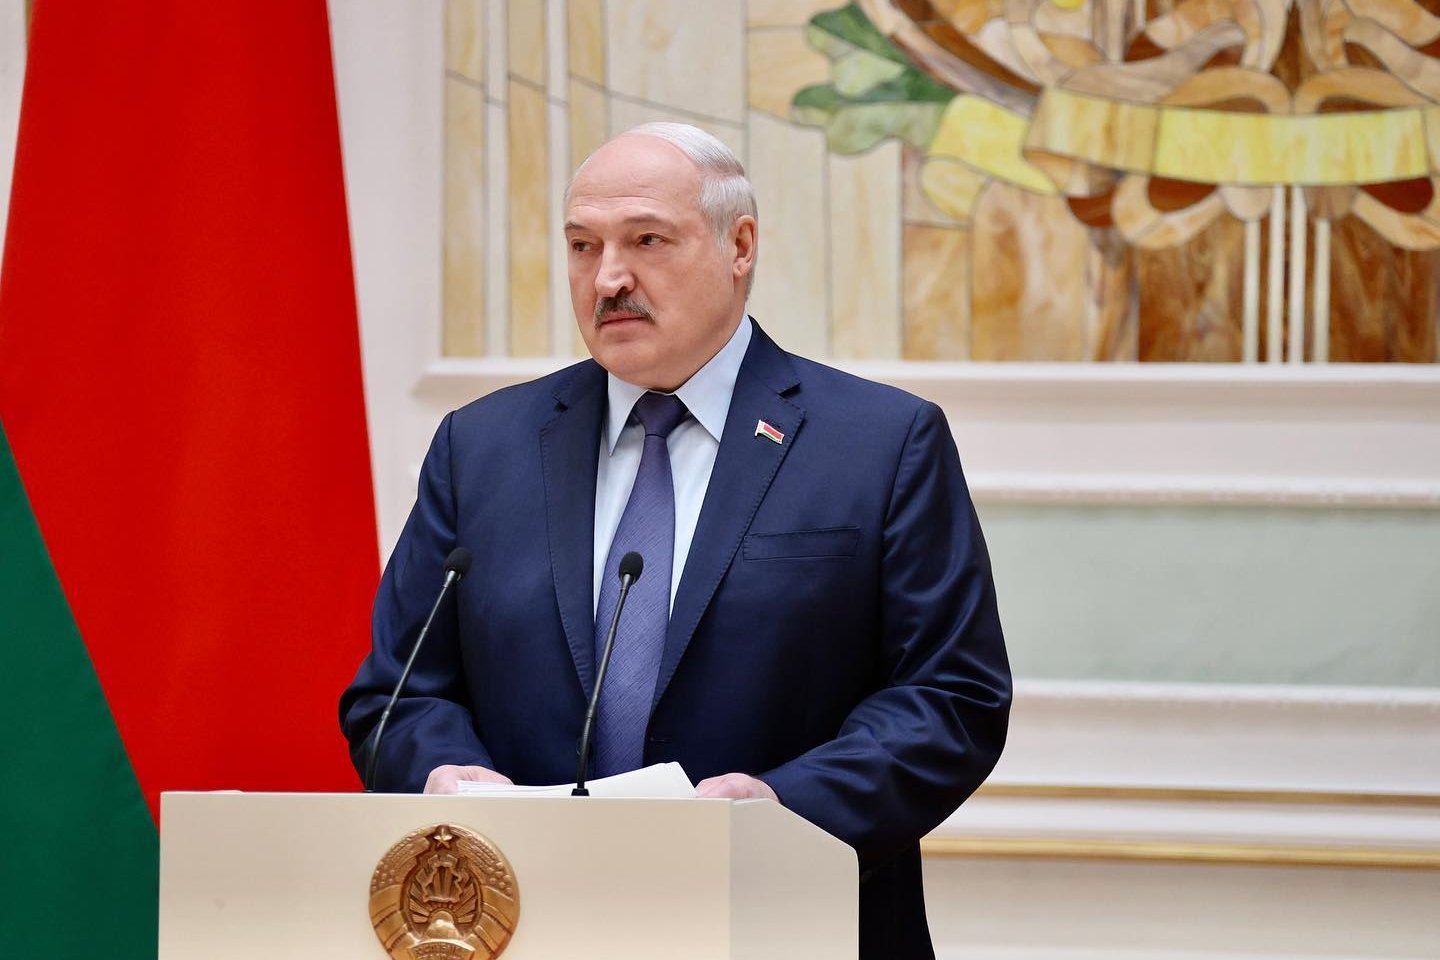 Новости мира / Политика в мире / Лукашенко подписал закон об изъятии иностранной собственности